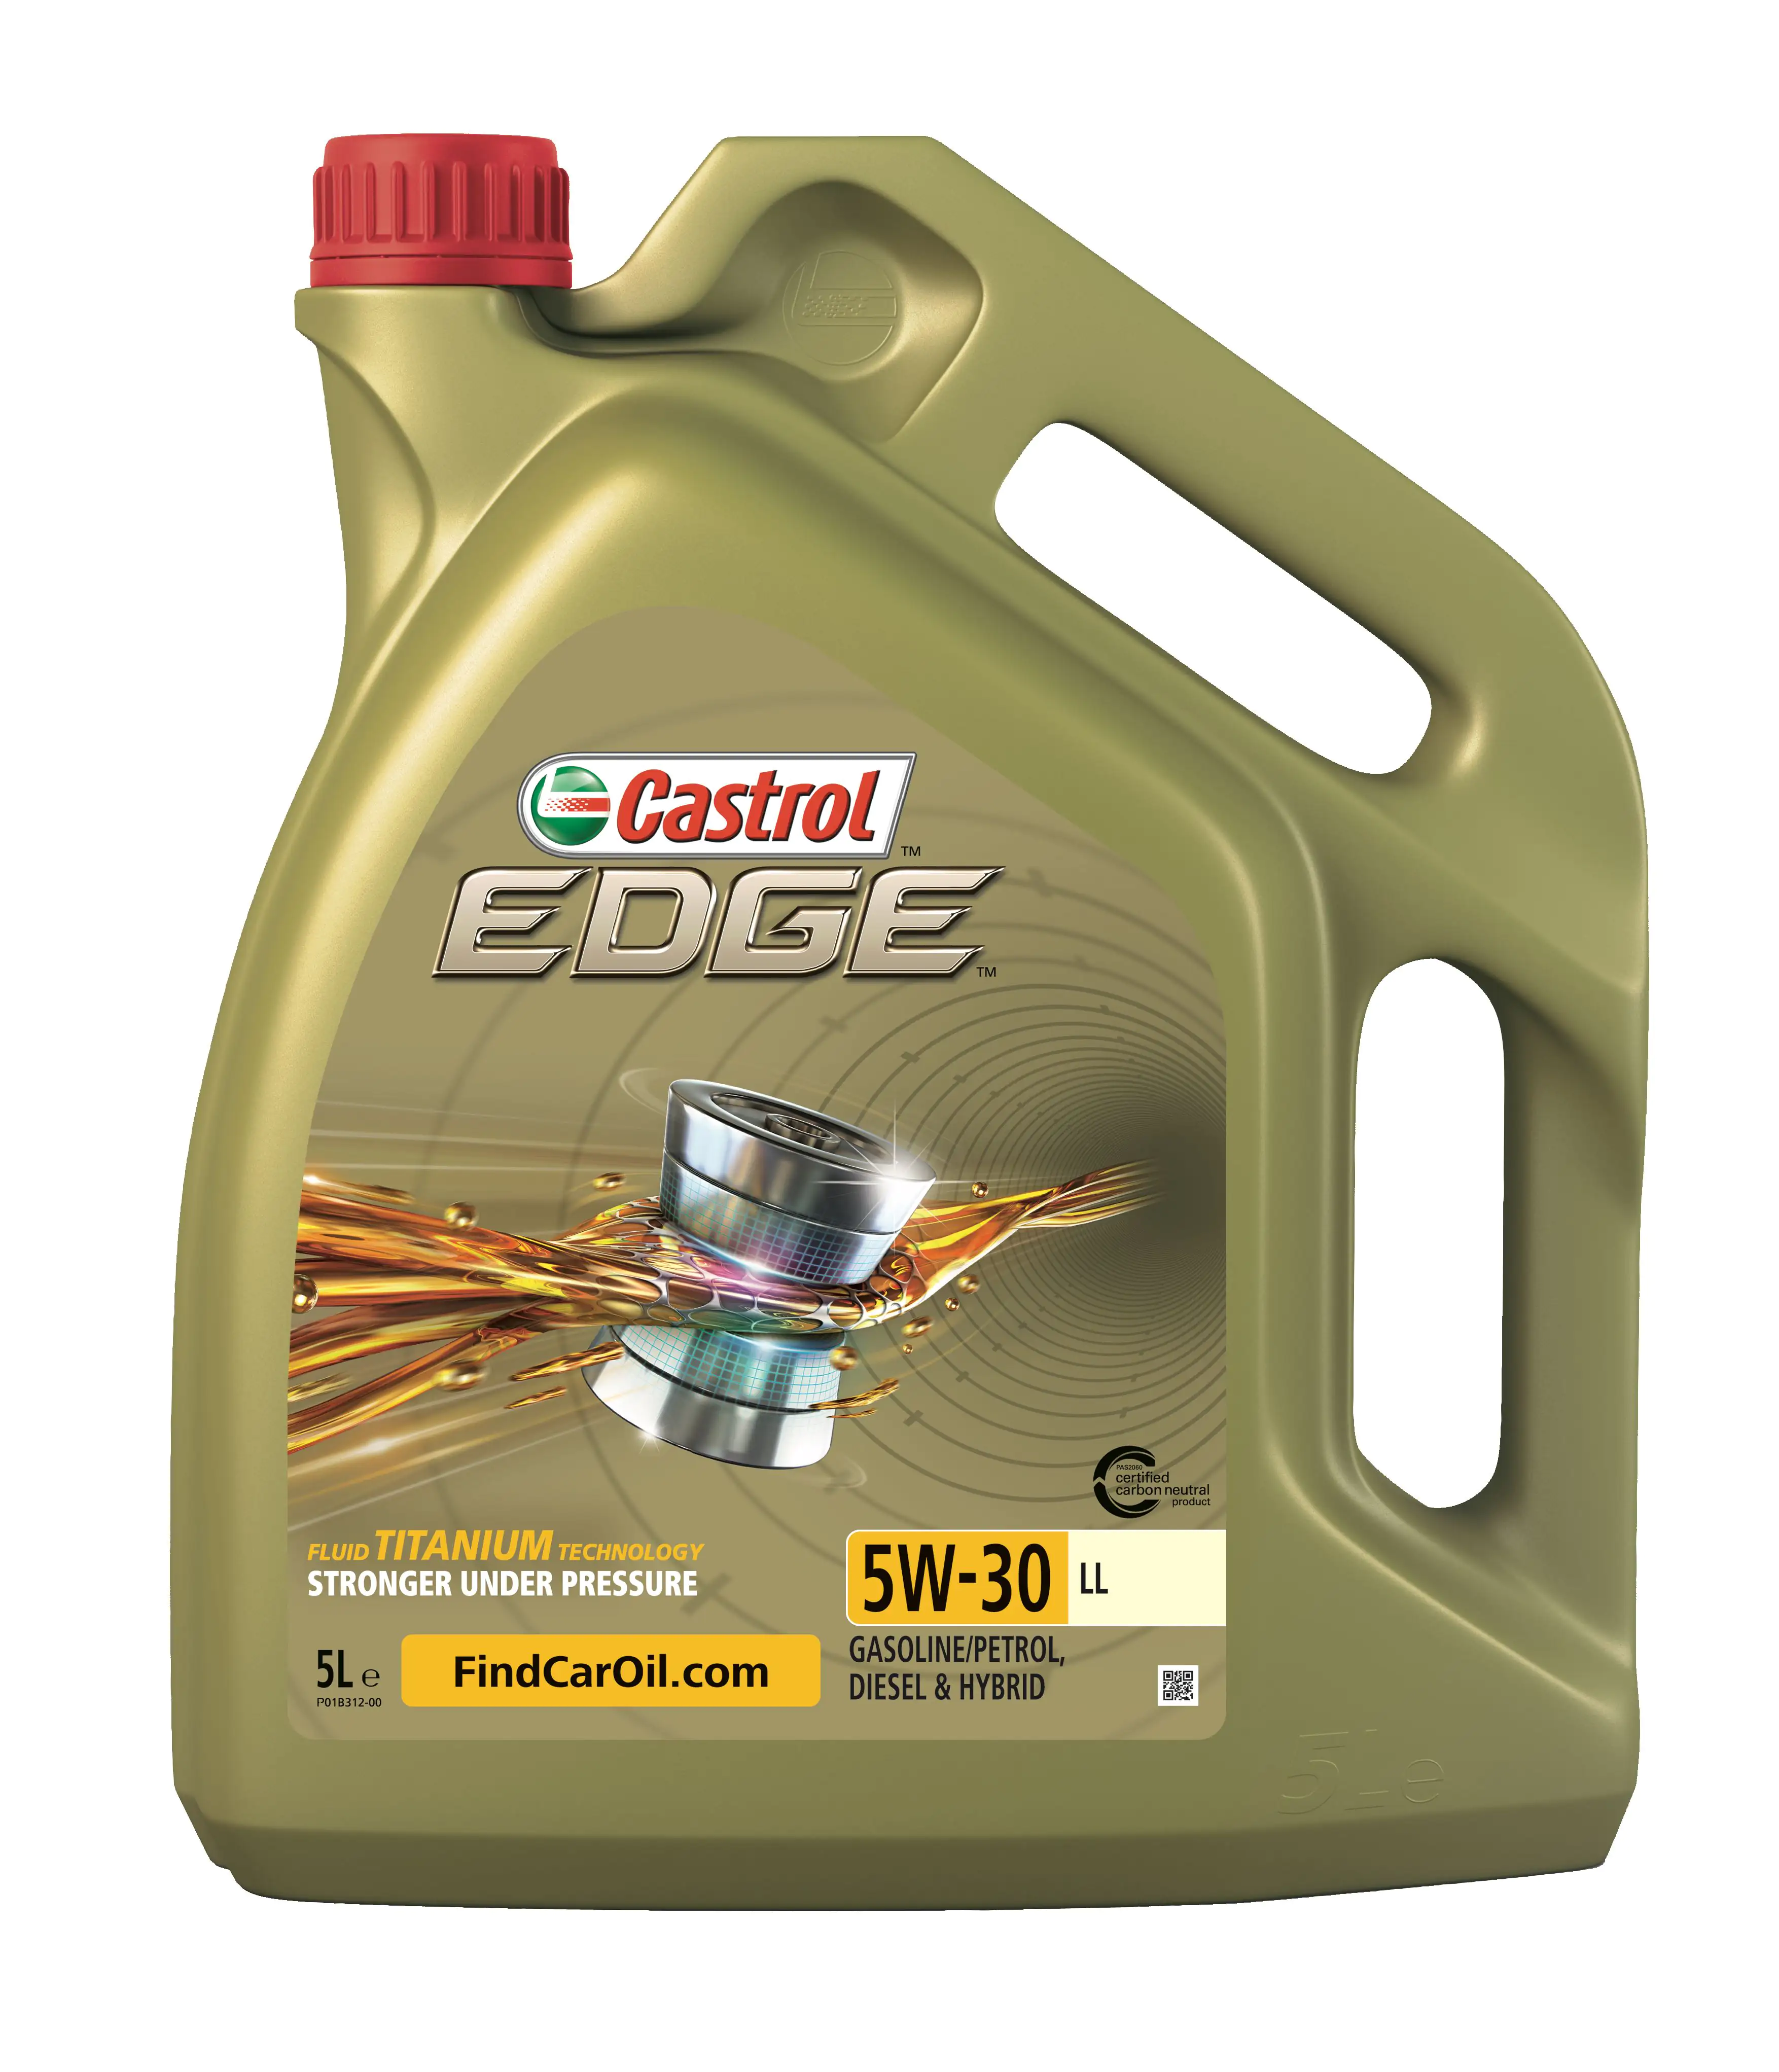 Castrol Motoröl Edge 5W-30 LL 5L kaufen